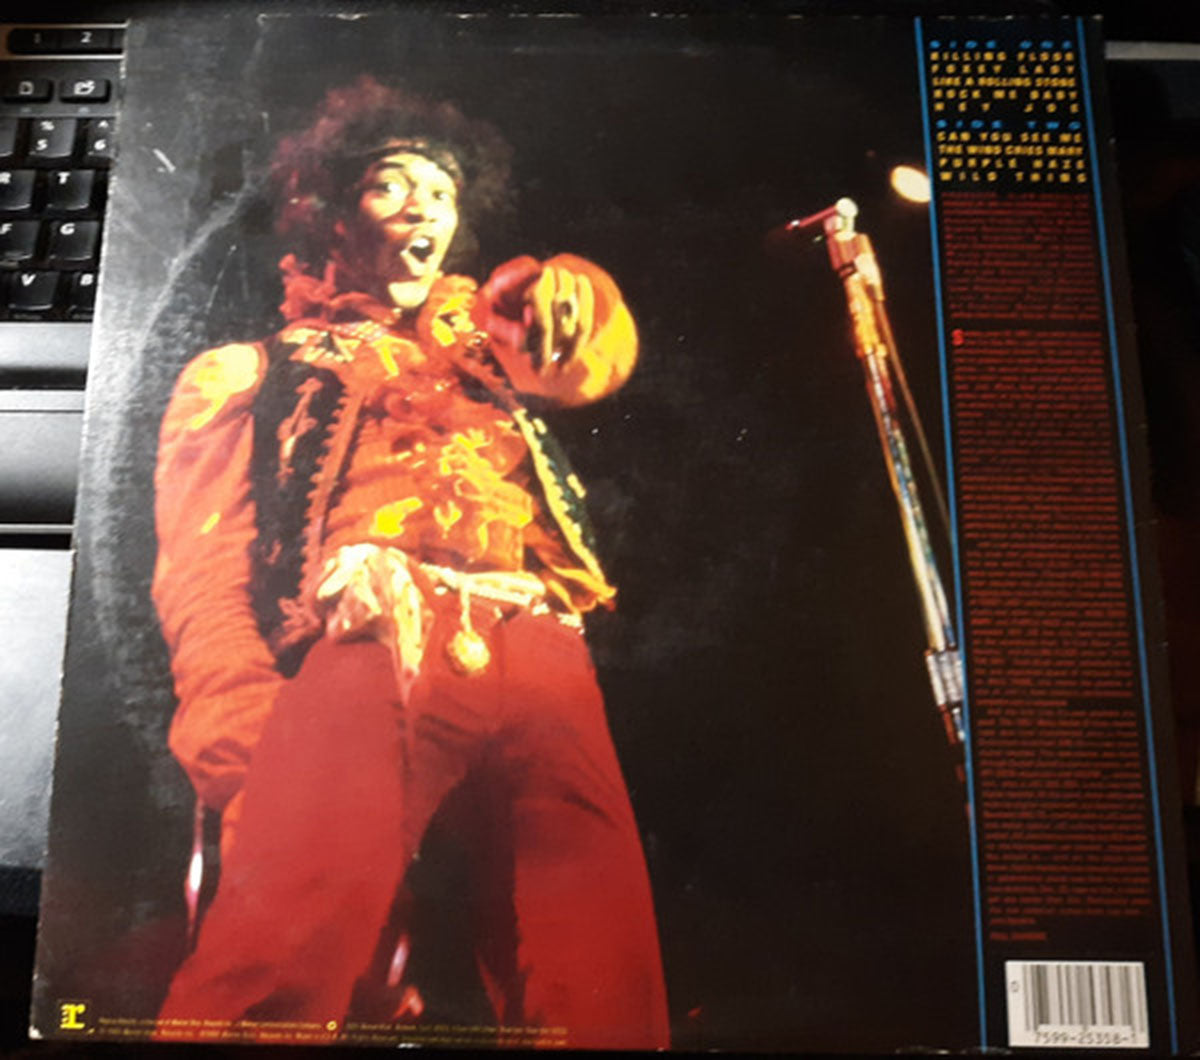 Jimi Hendrix – Jimi Plays Monterey - US Pressing